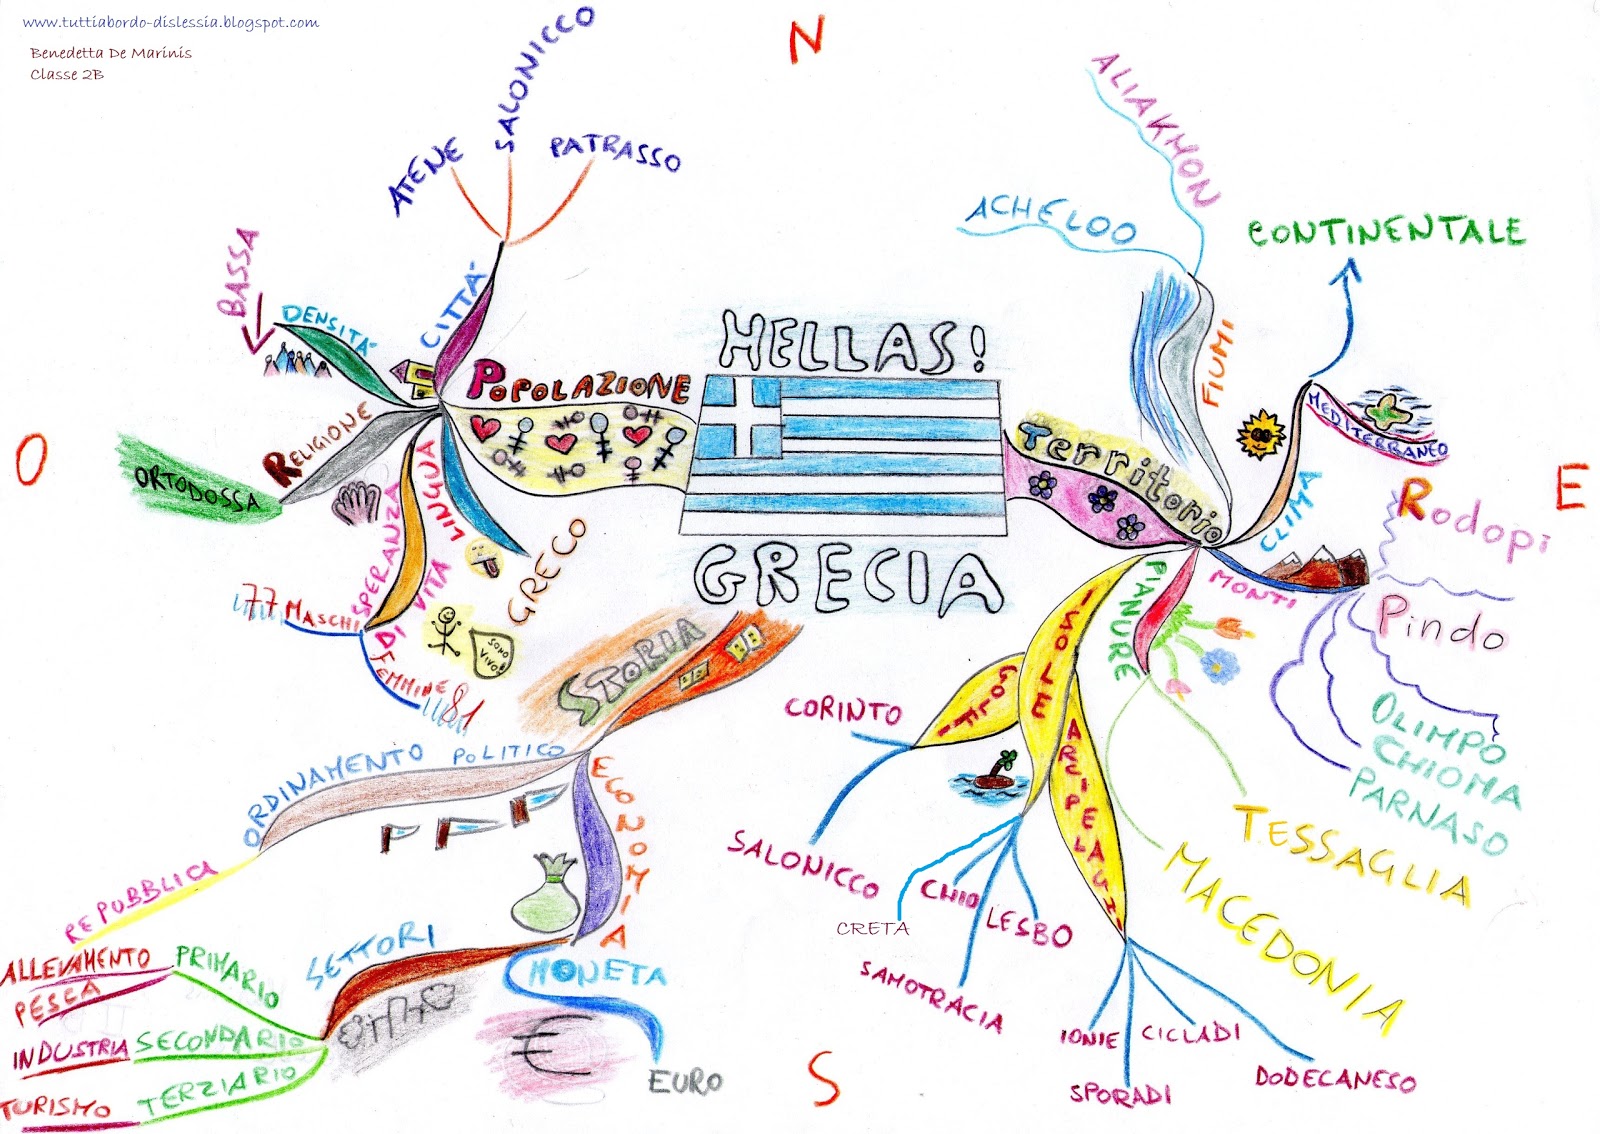 grecia - mappa mentale - tuttiabordo dislessia.jpg Grecia+-+mappa+mentale+-+tuttiabordo+dislessia